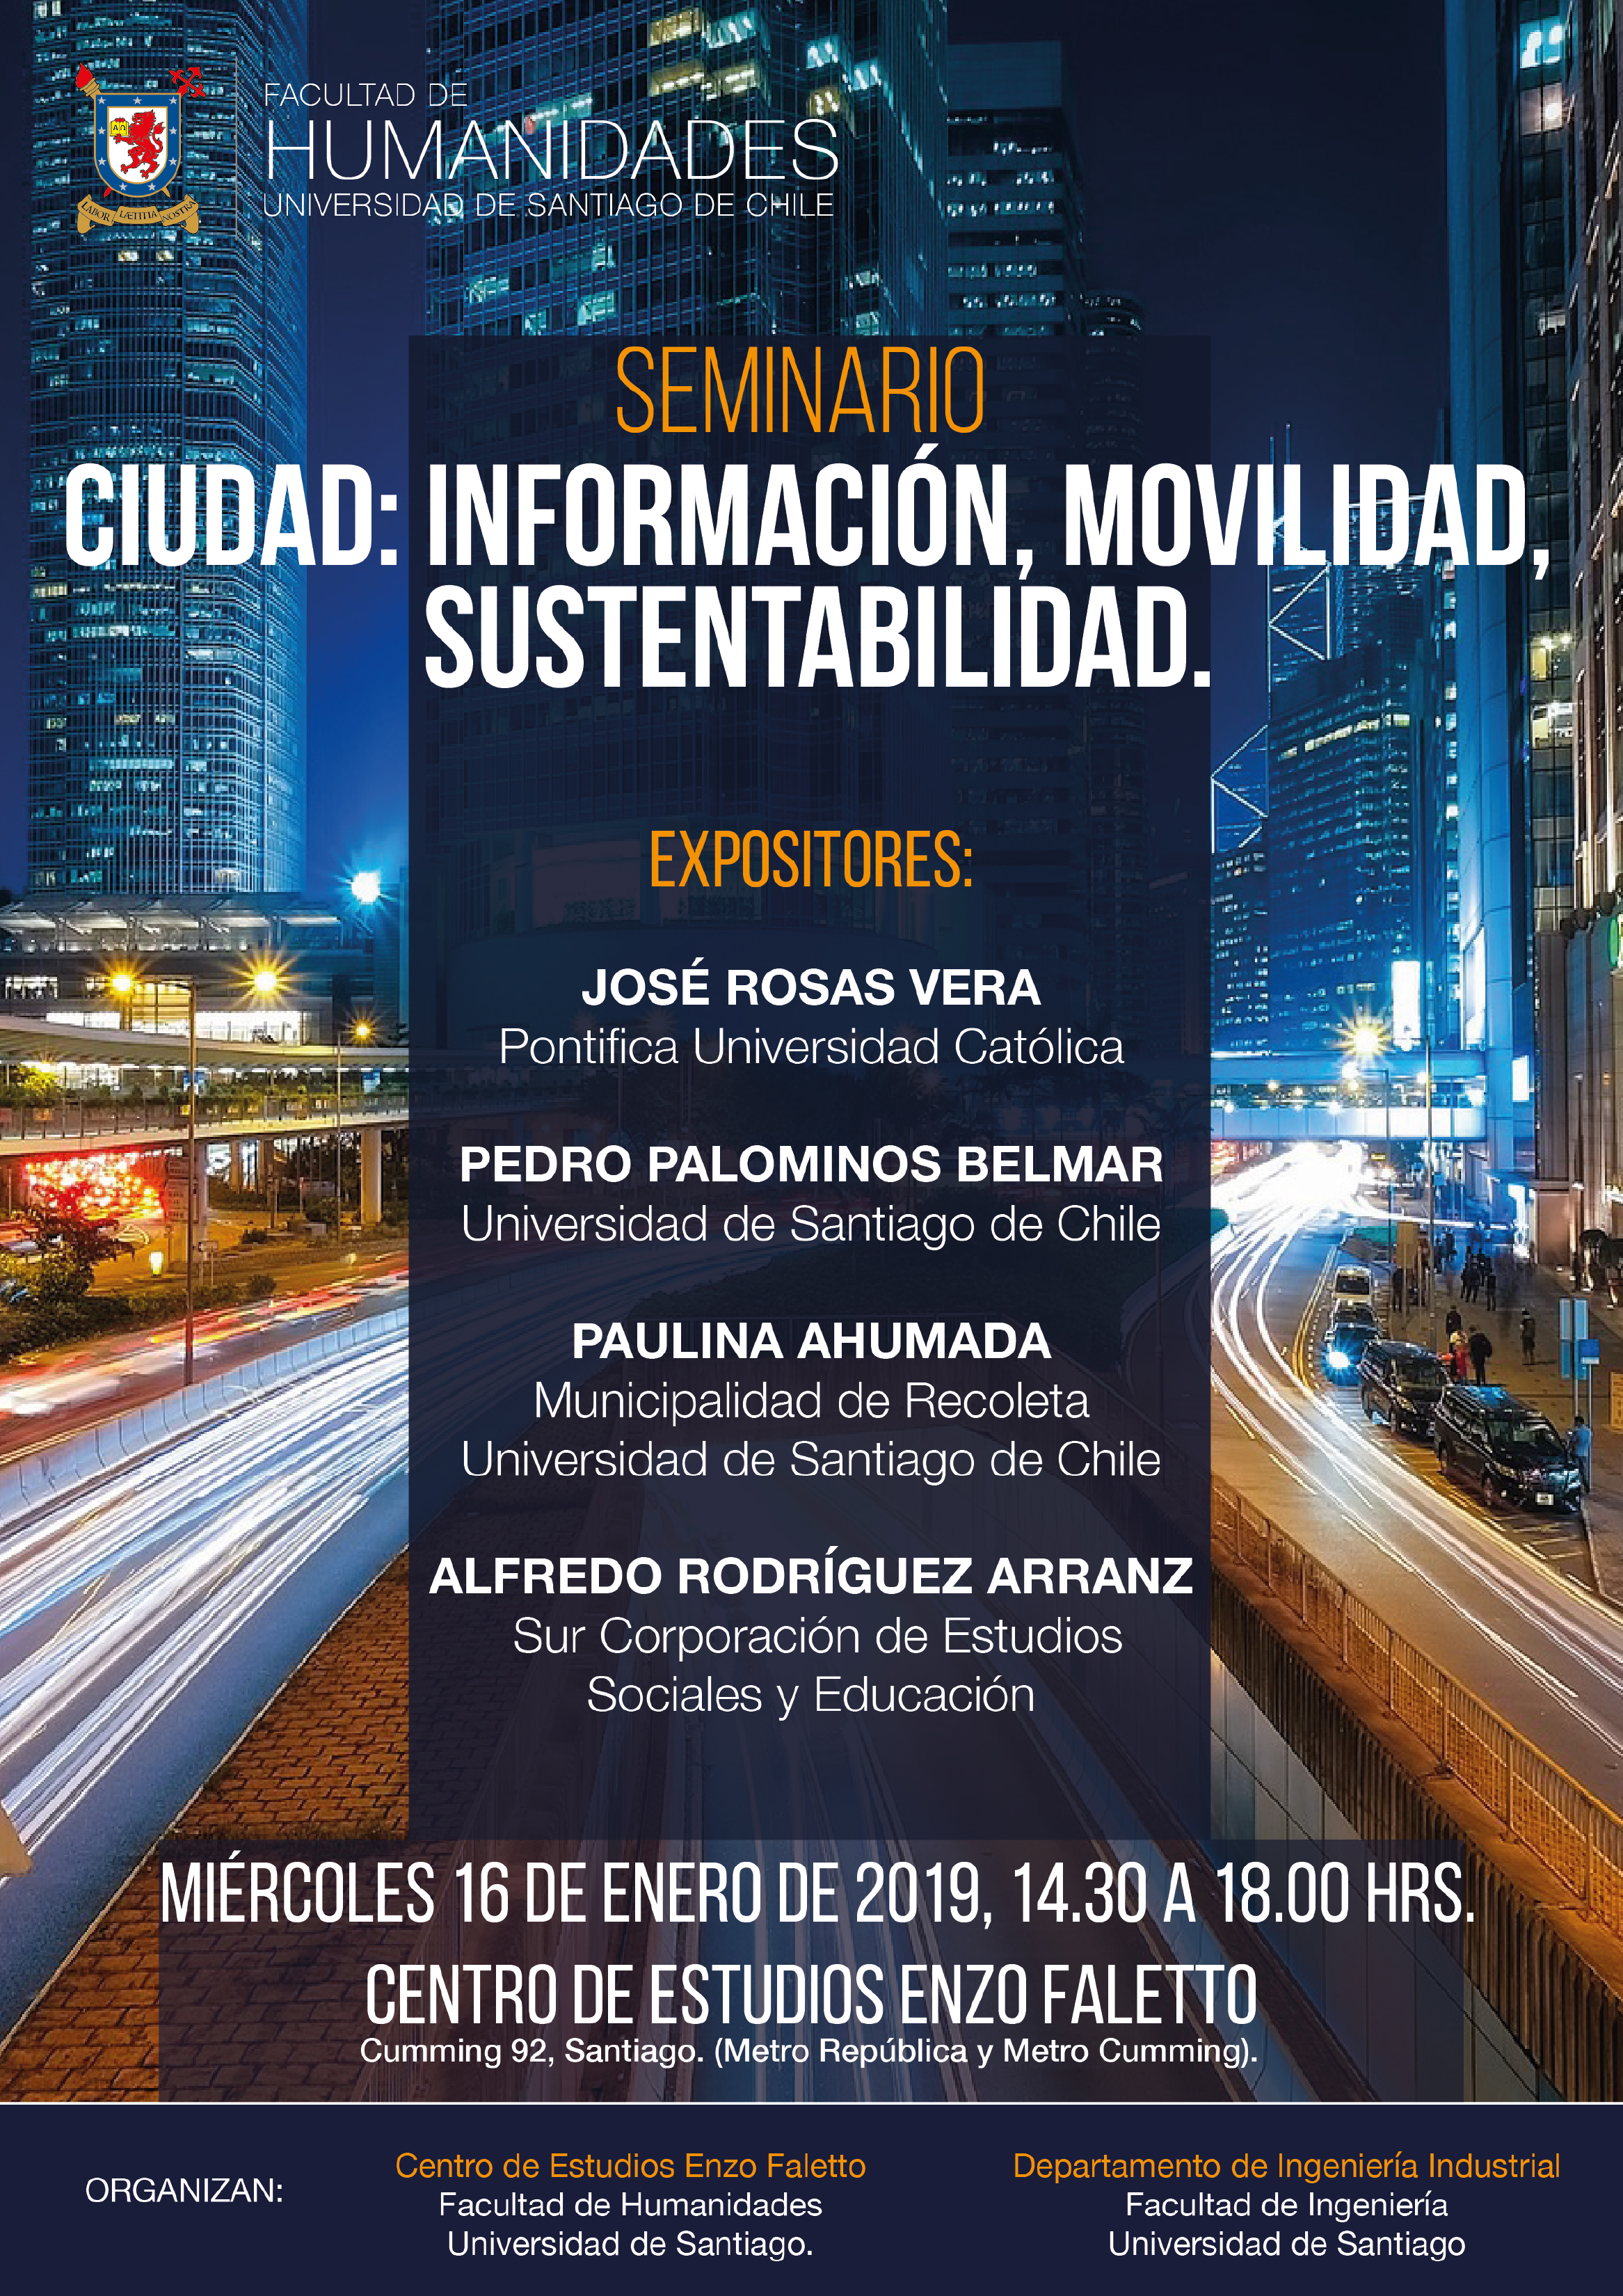 19-01-16_Afiche_seminario_ciudad-_informacioin_movilidad_sustentabilidad-02_1.jpg